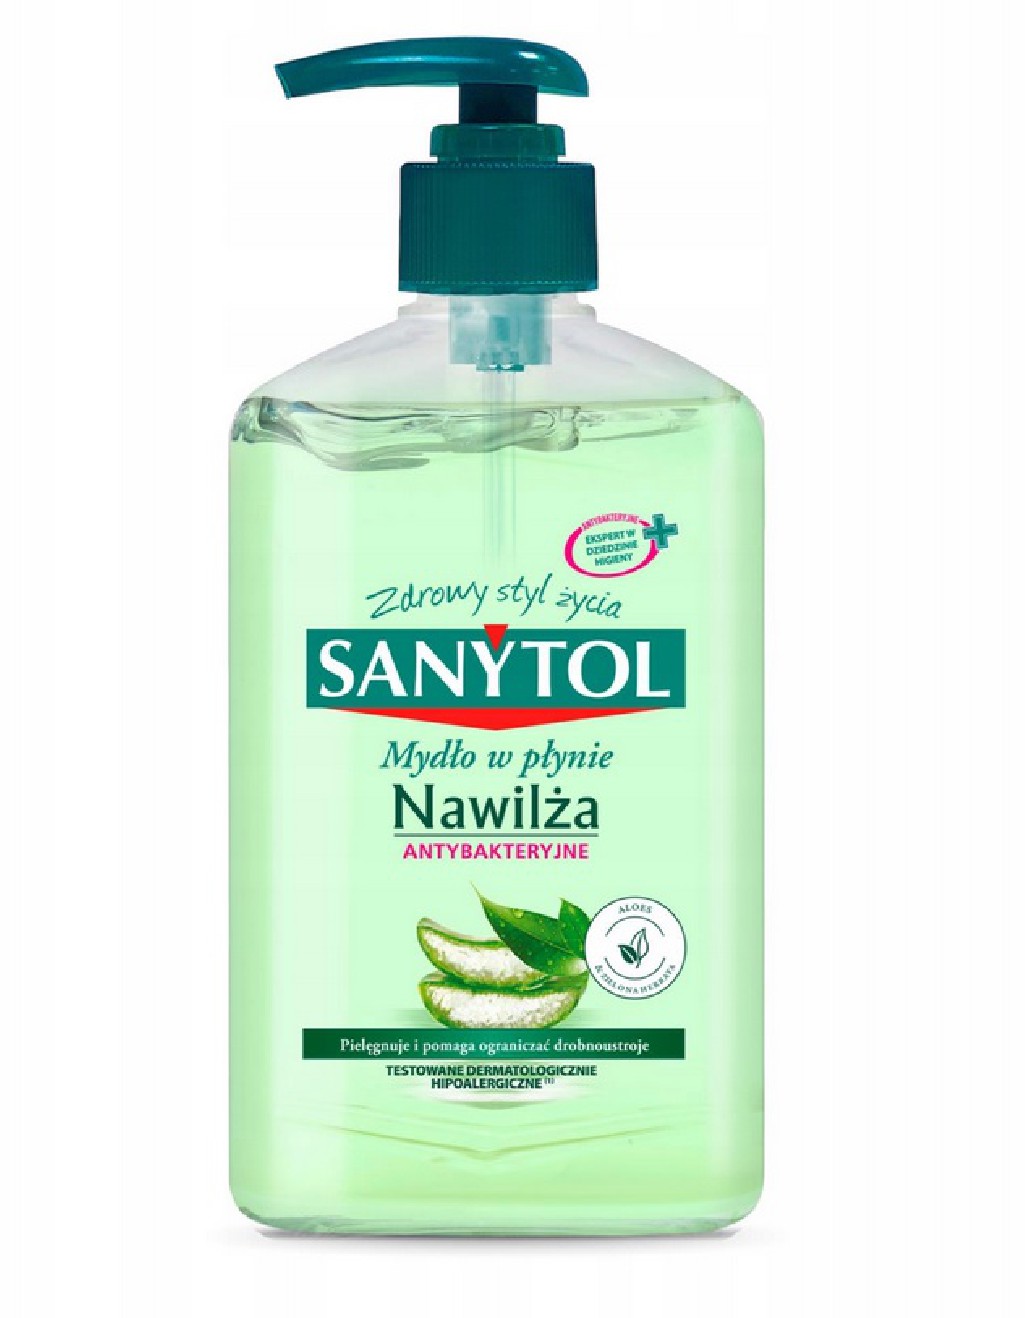 Antybakteryjne mydło w płynie Sanytol 250 ml o zapachu aloesu i zielonej herbaty